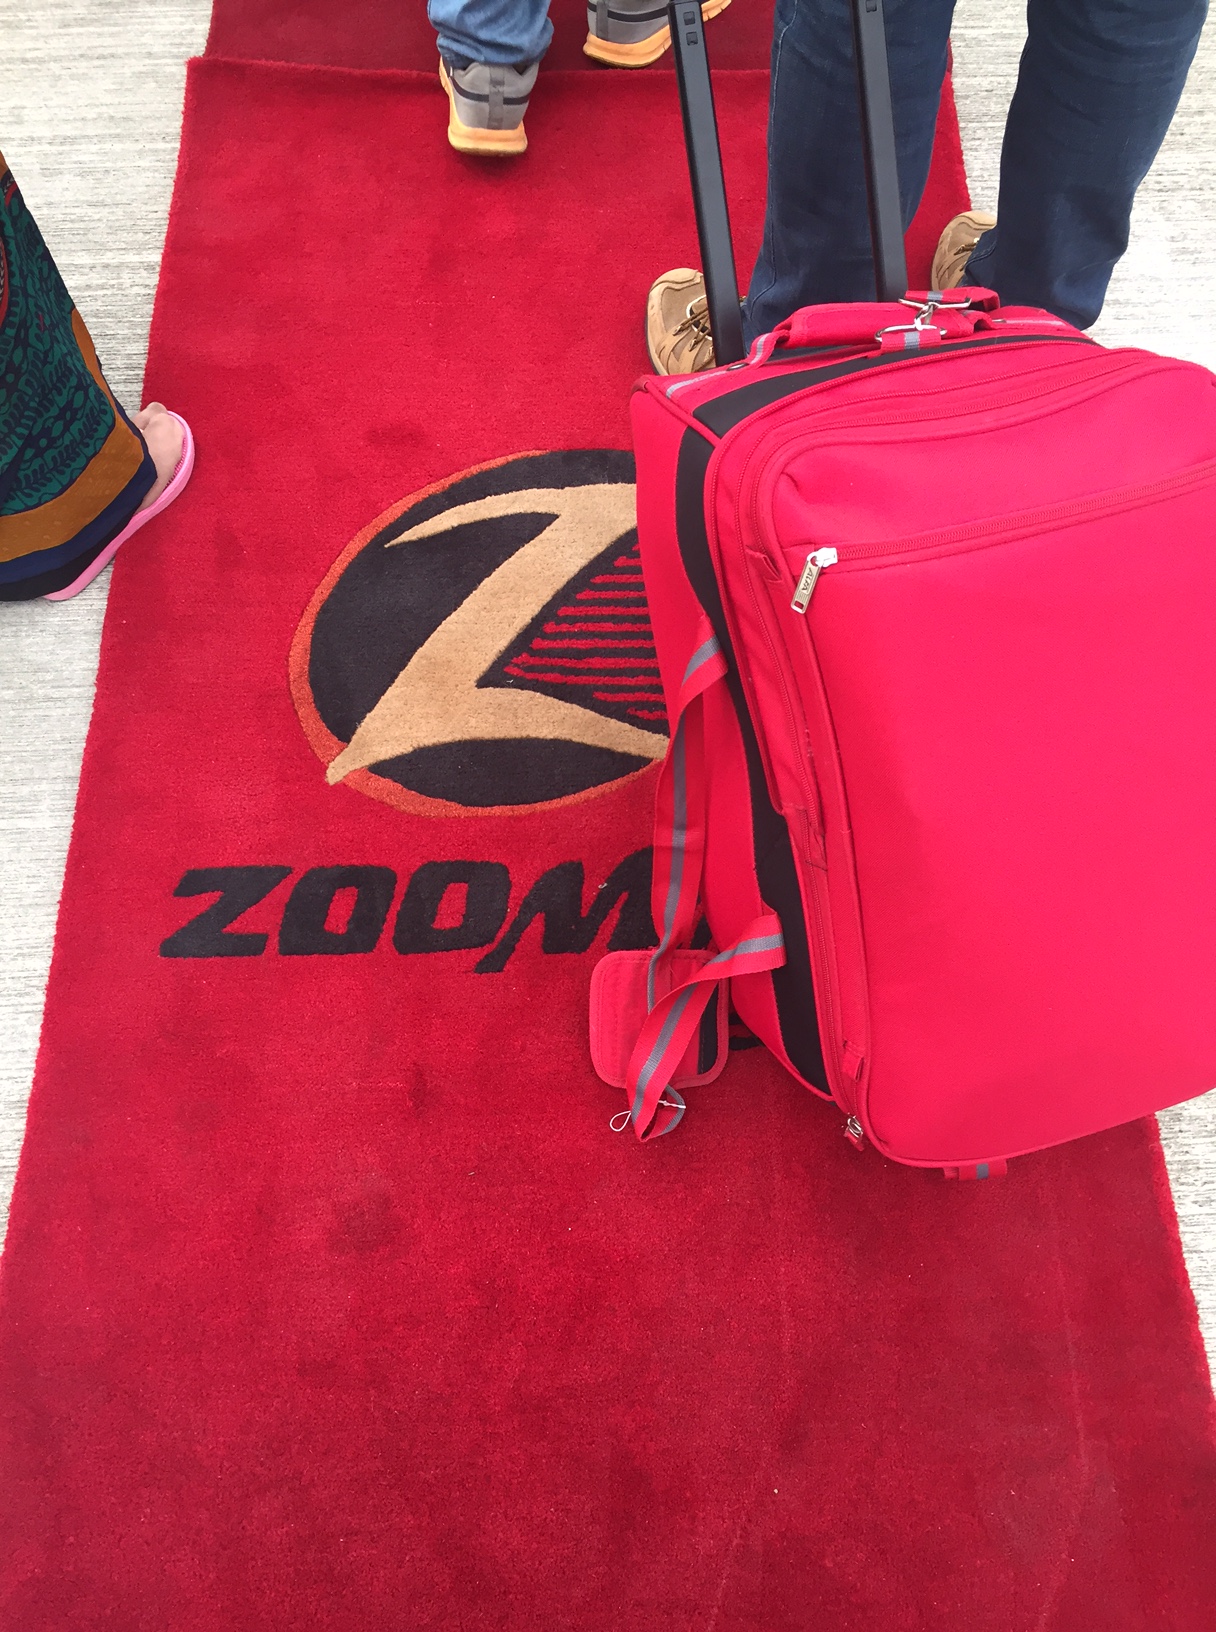 Zoom Air: A Review – An Adventure Awaits